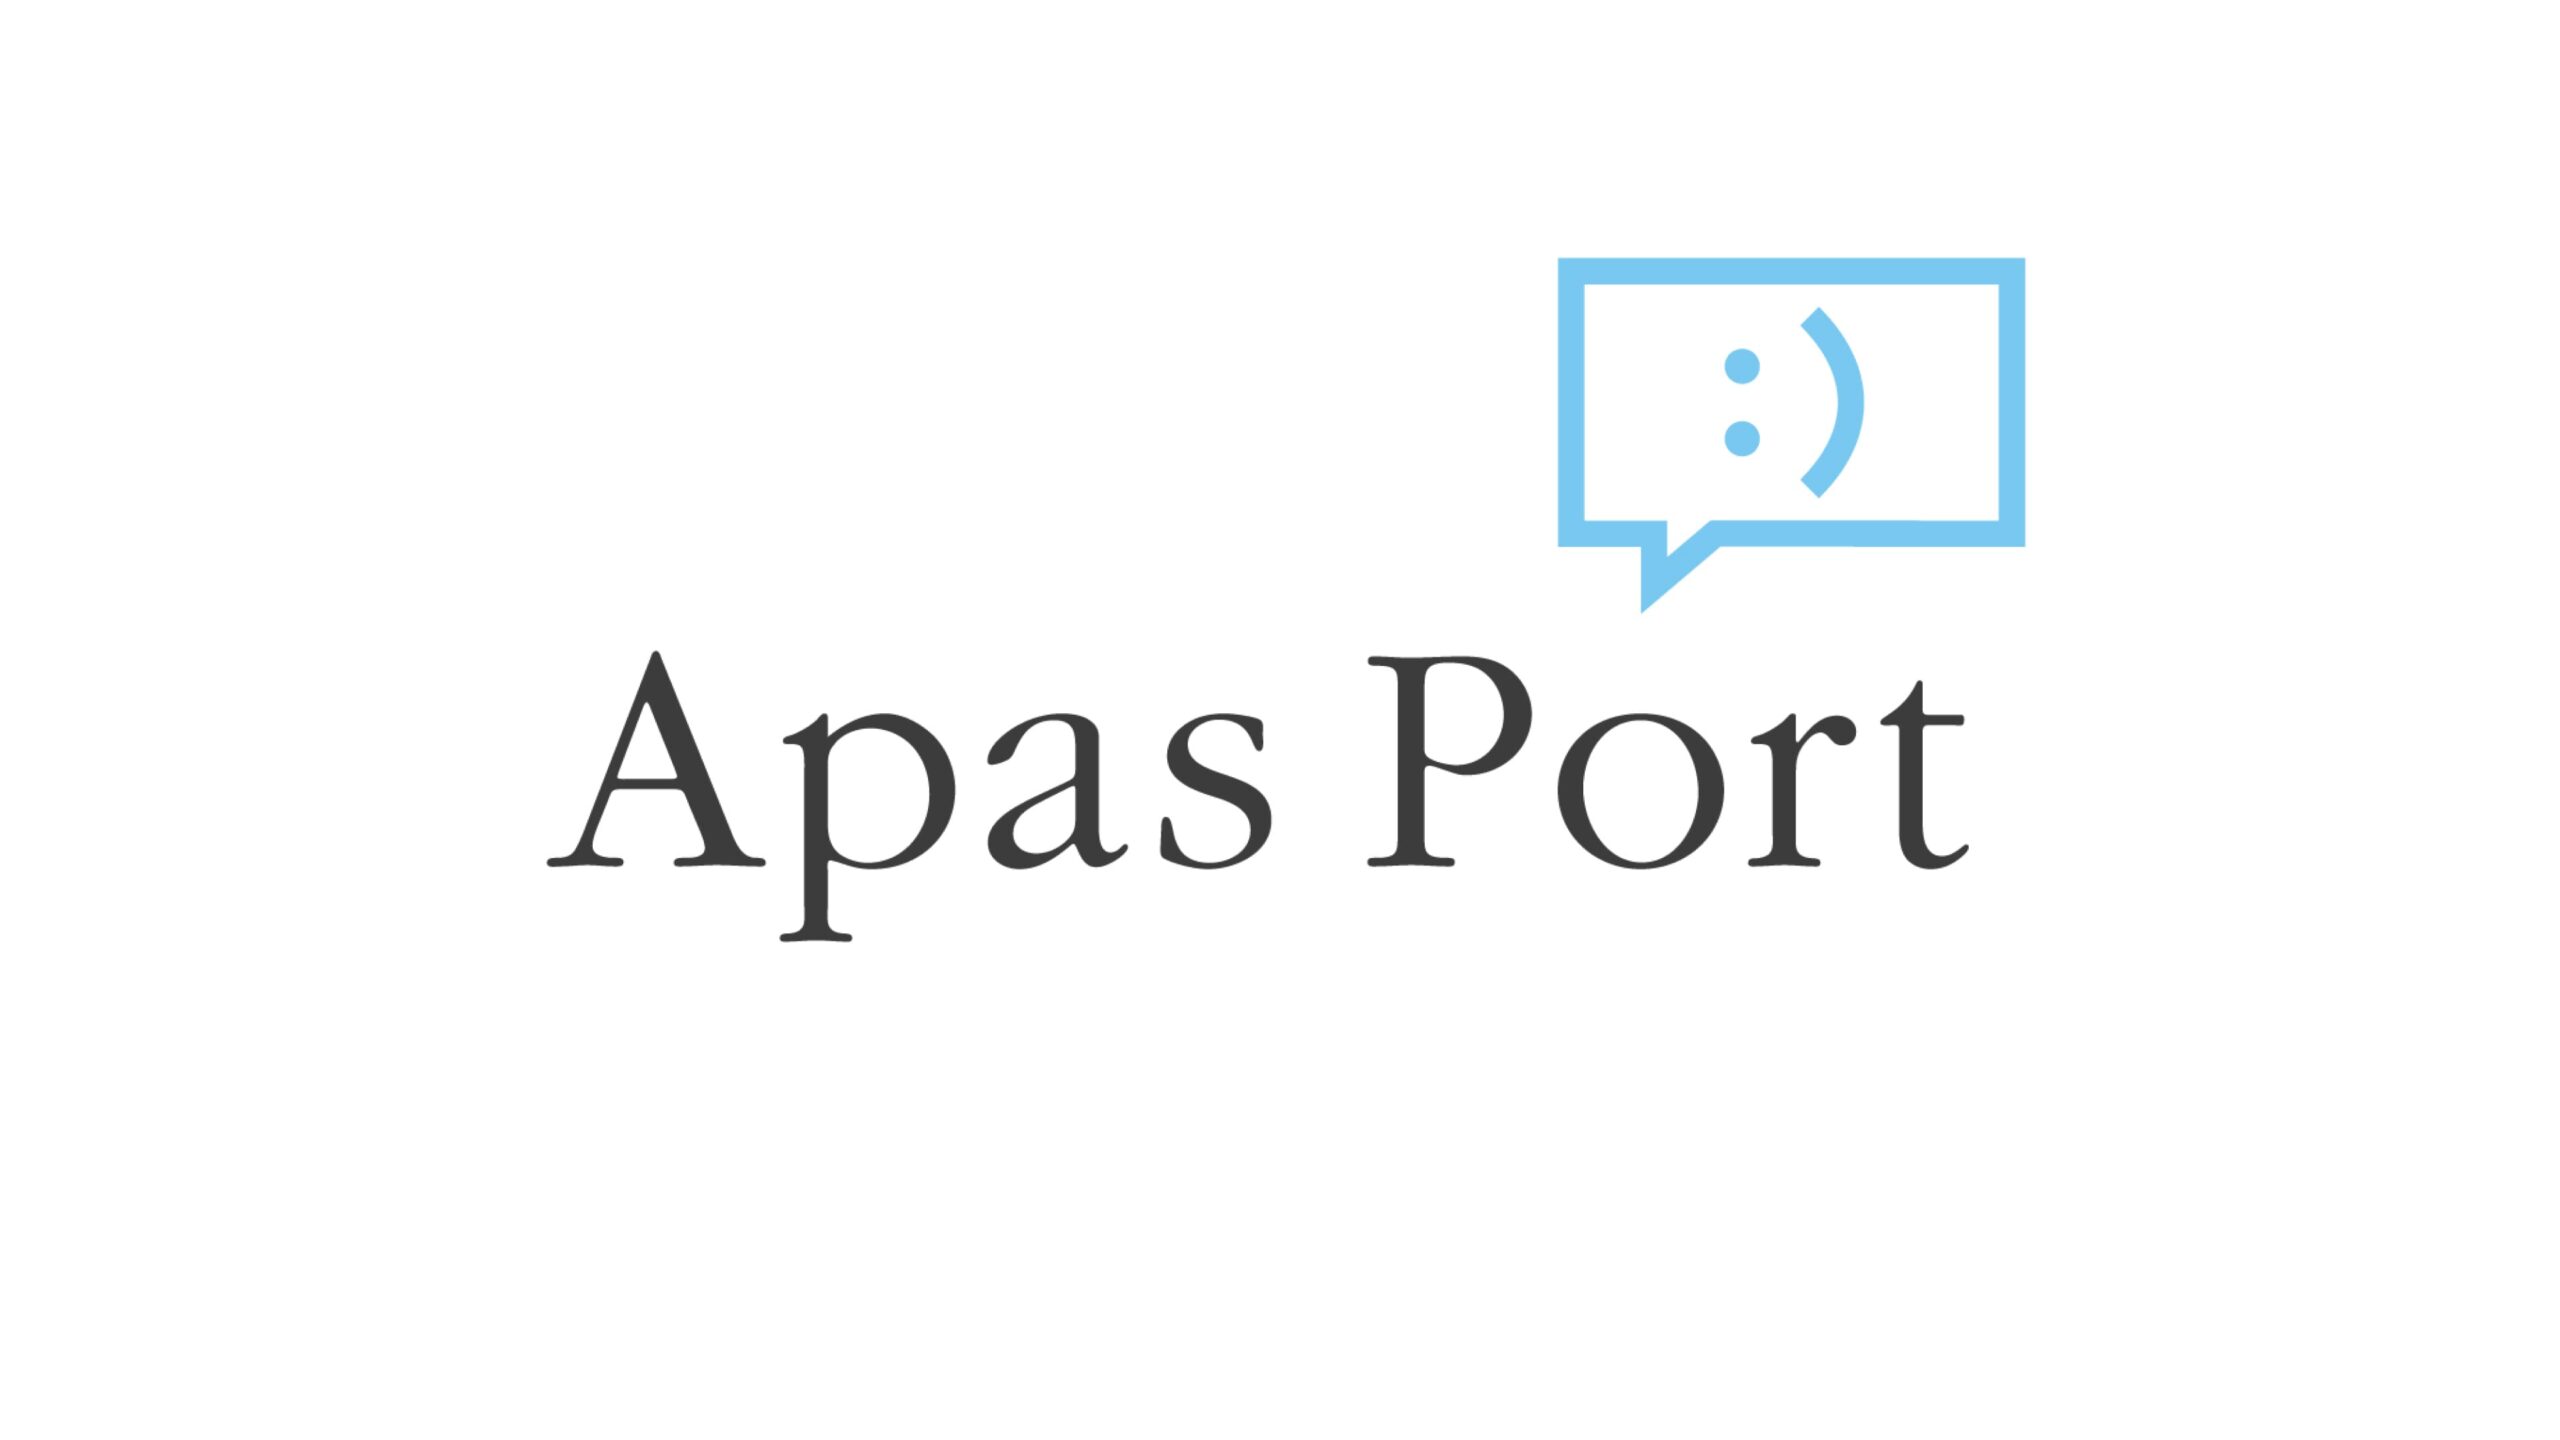 株式会社Apas Port、Web3のクリエイティブ プロダクションとして資本パートナーの参入と2,350万円の資金調達を発表——新たなWeb3の世界を創造